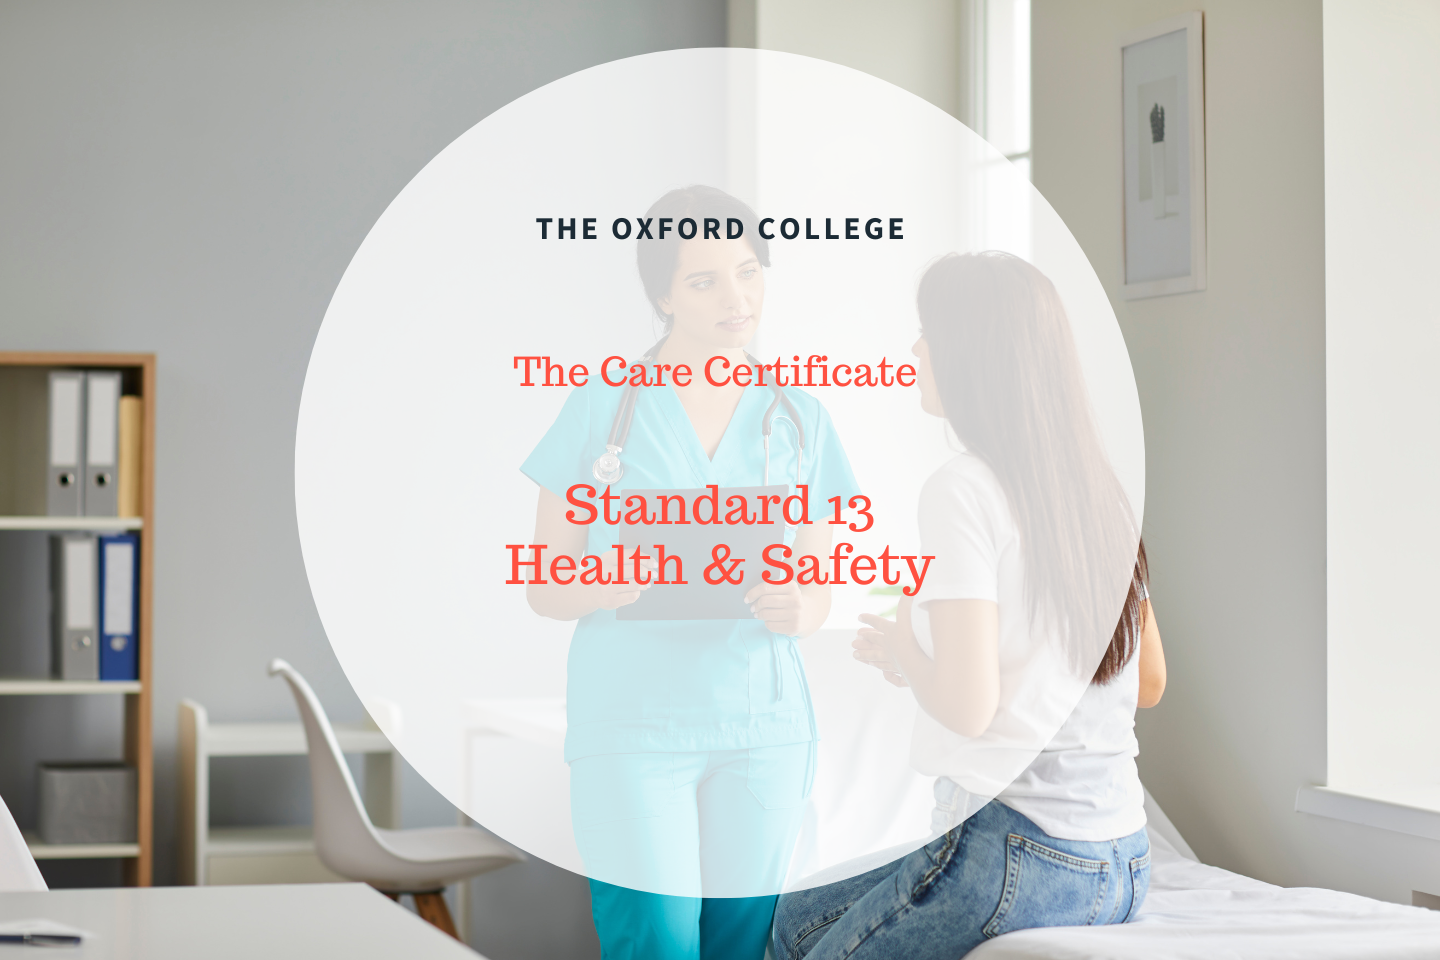 Standard 13 : Health & Safety